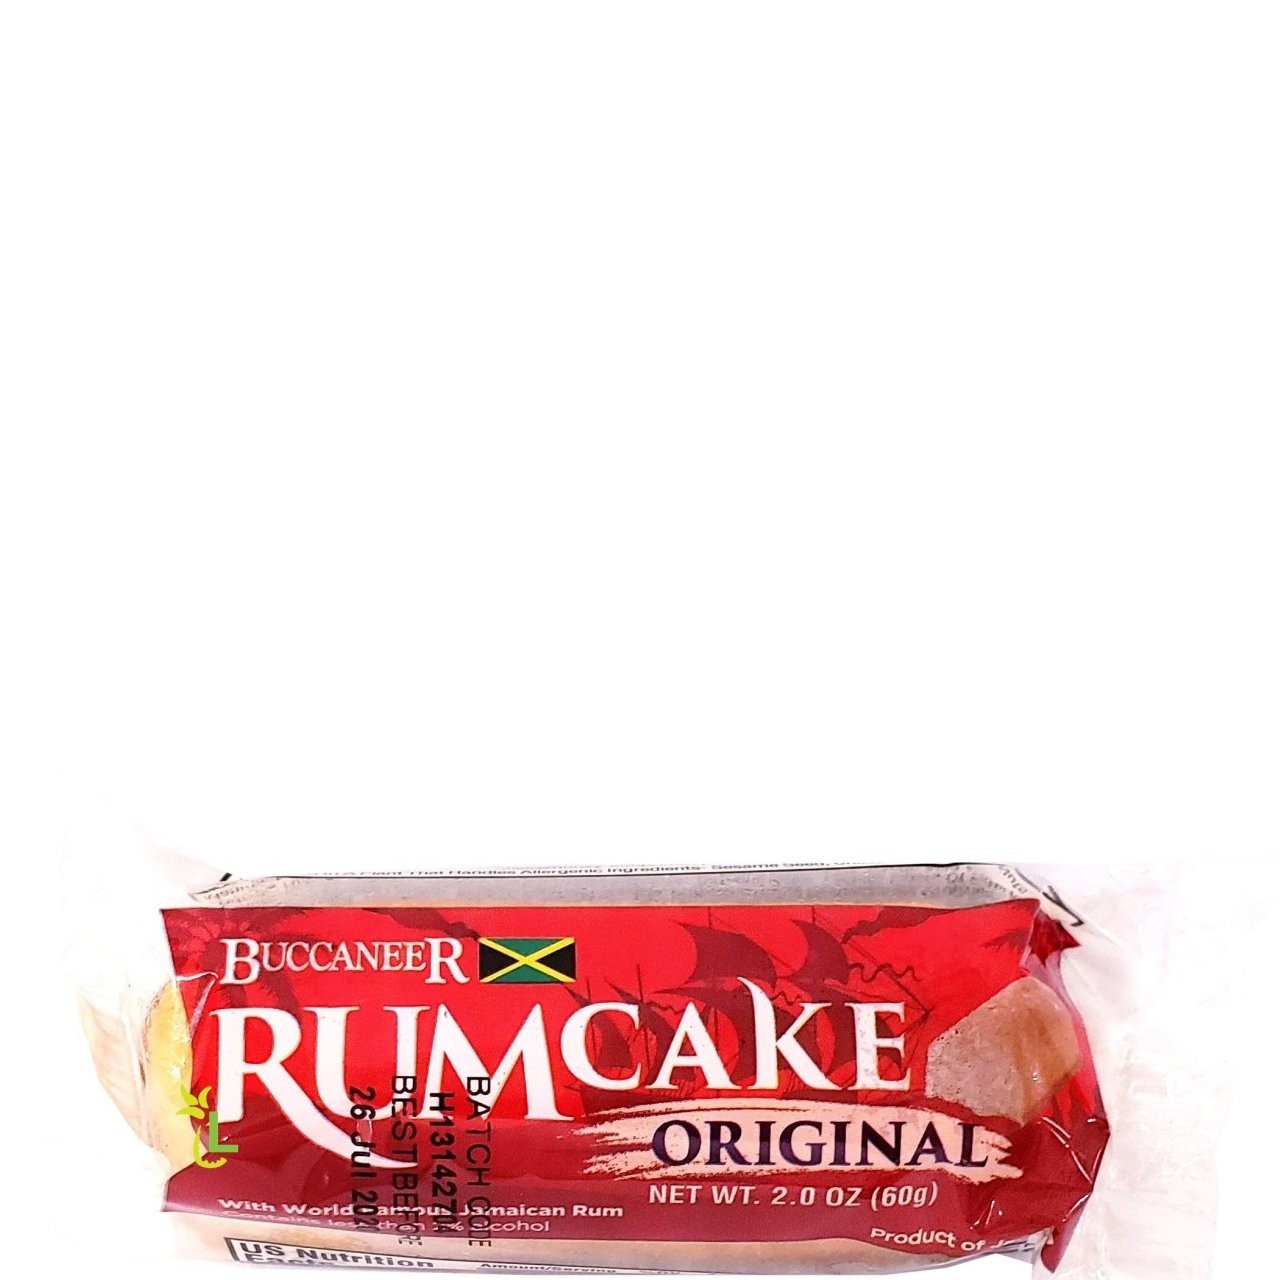 BUCCANEER RUM CAKE ORIGINAL 60g